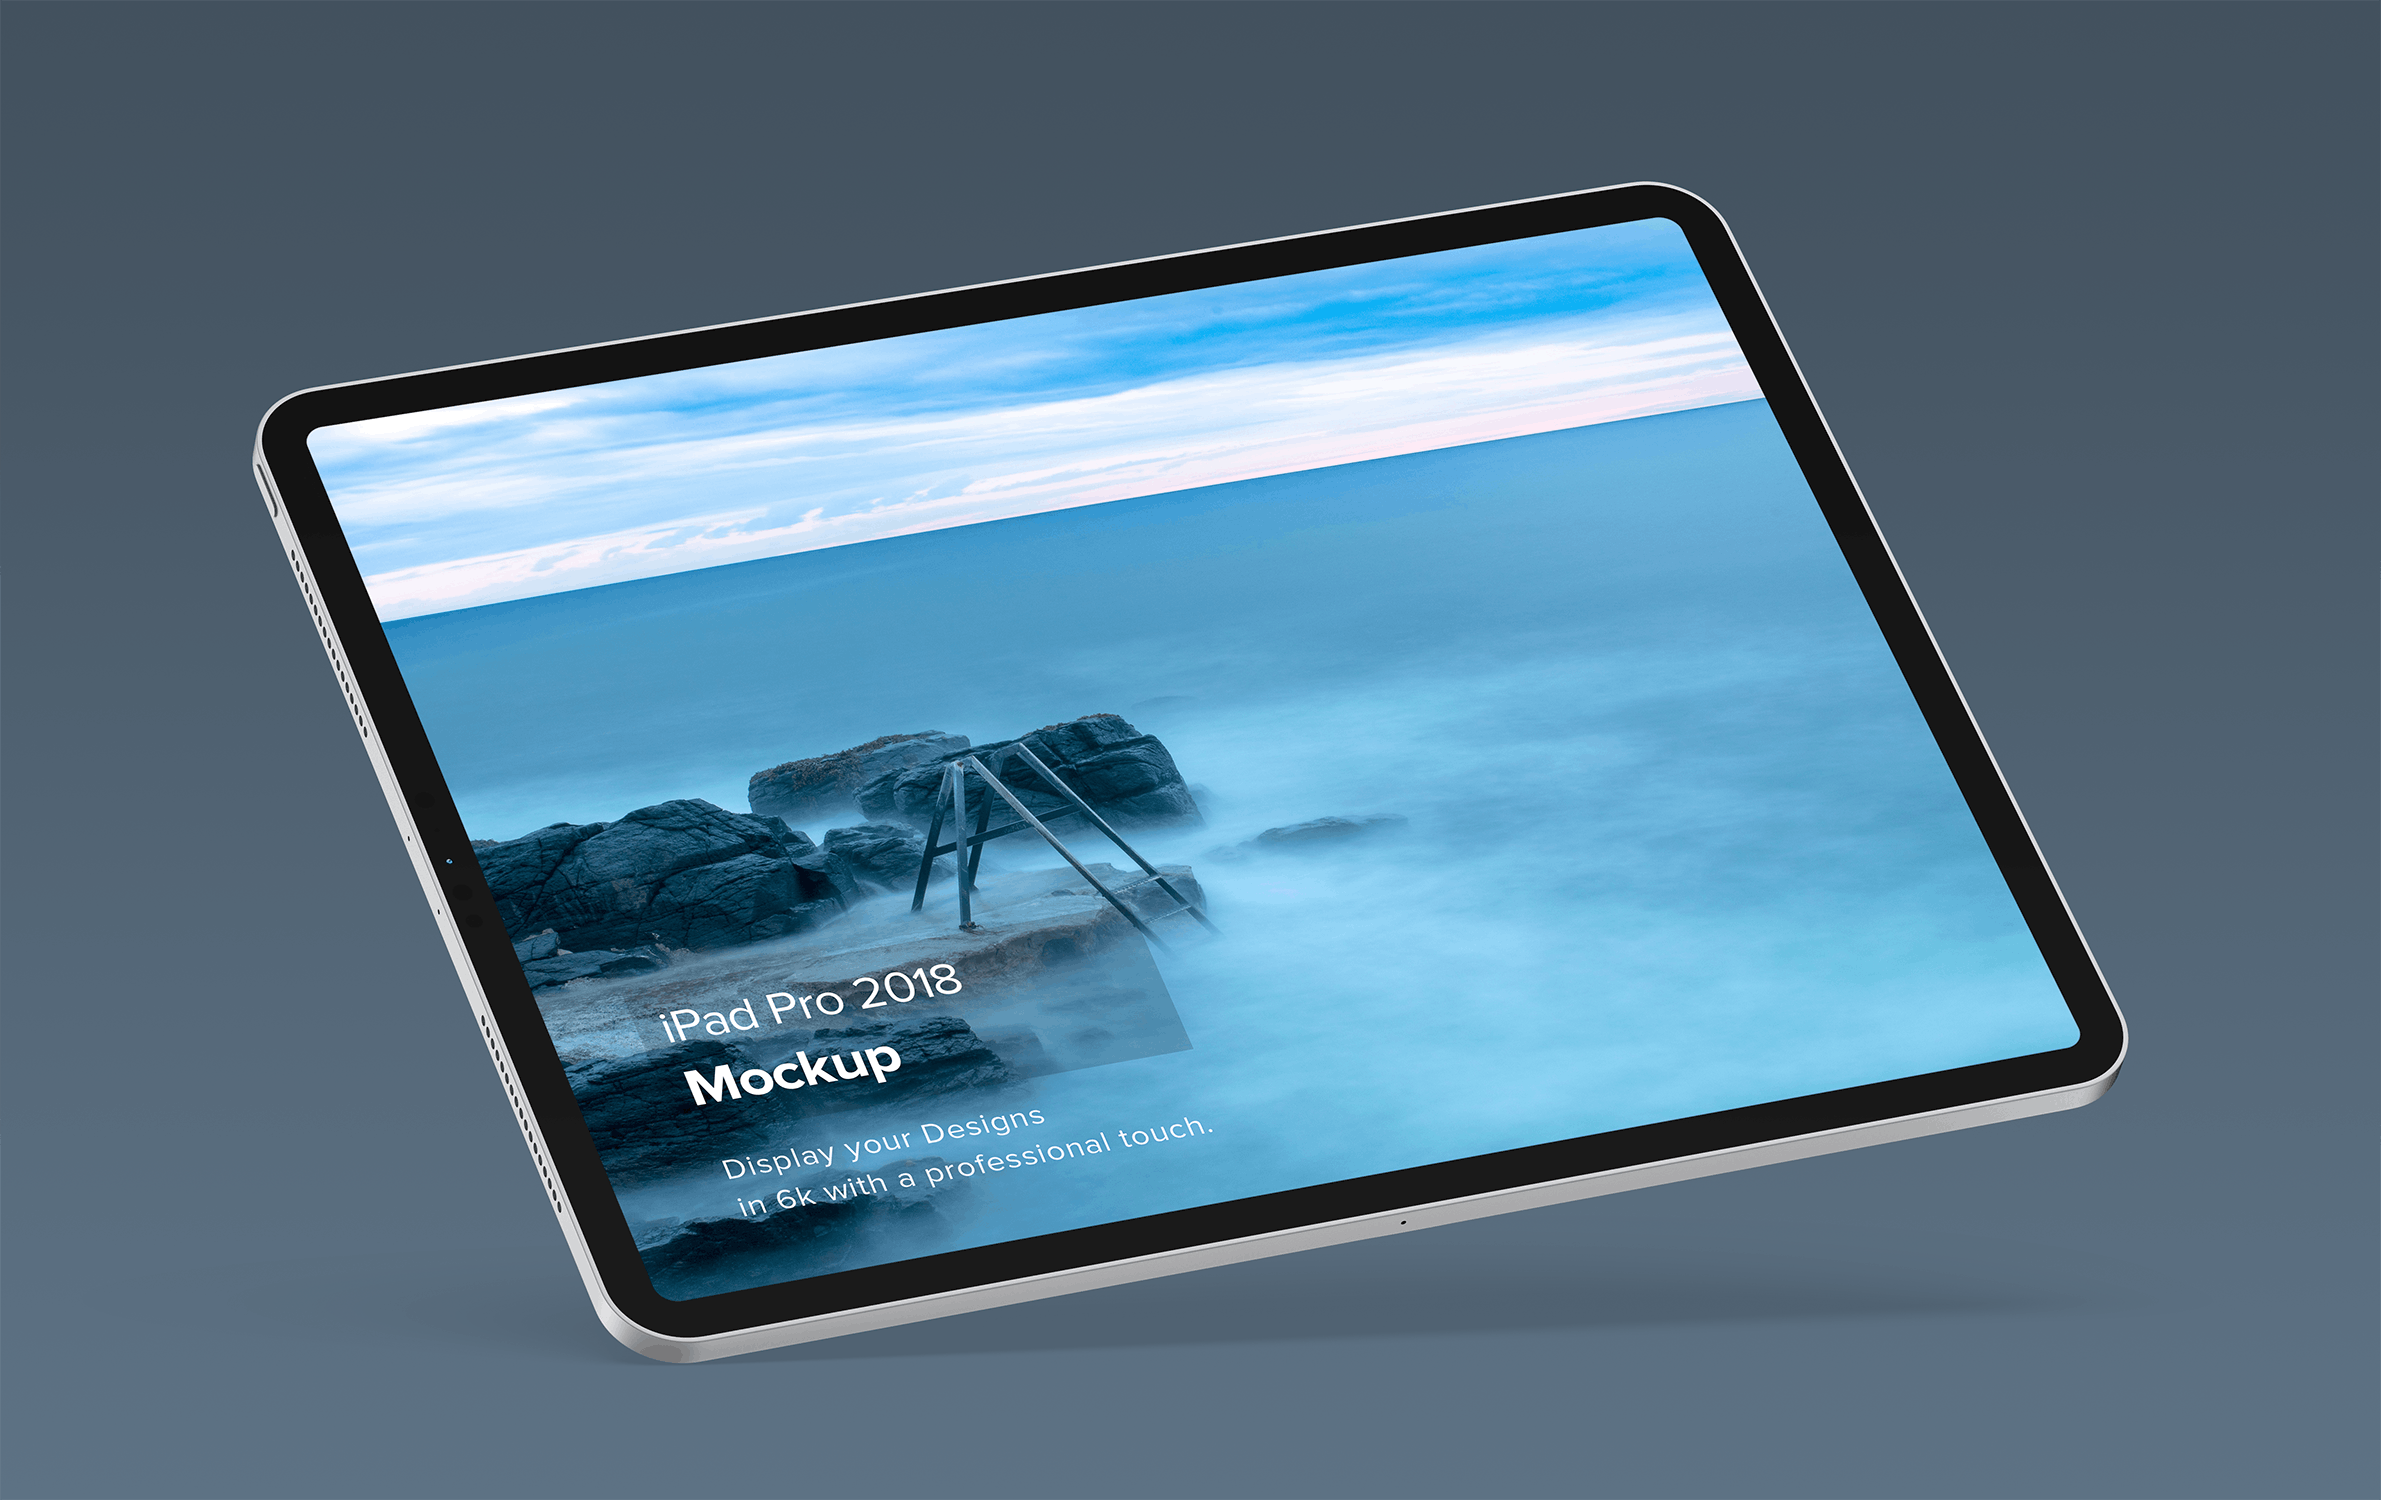 iPad Pro专业平板电脑设计演示蚂蚁素材精选样机模板套装v2 iPad Mockup 2.0插图(4)